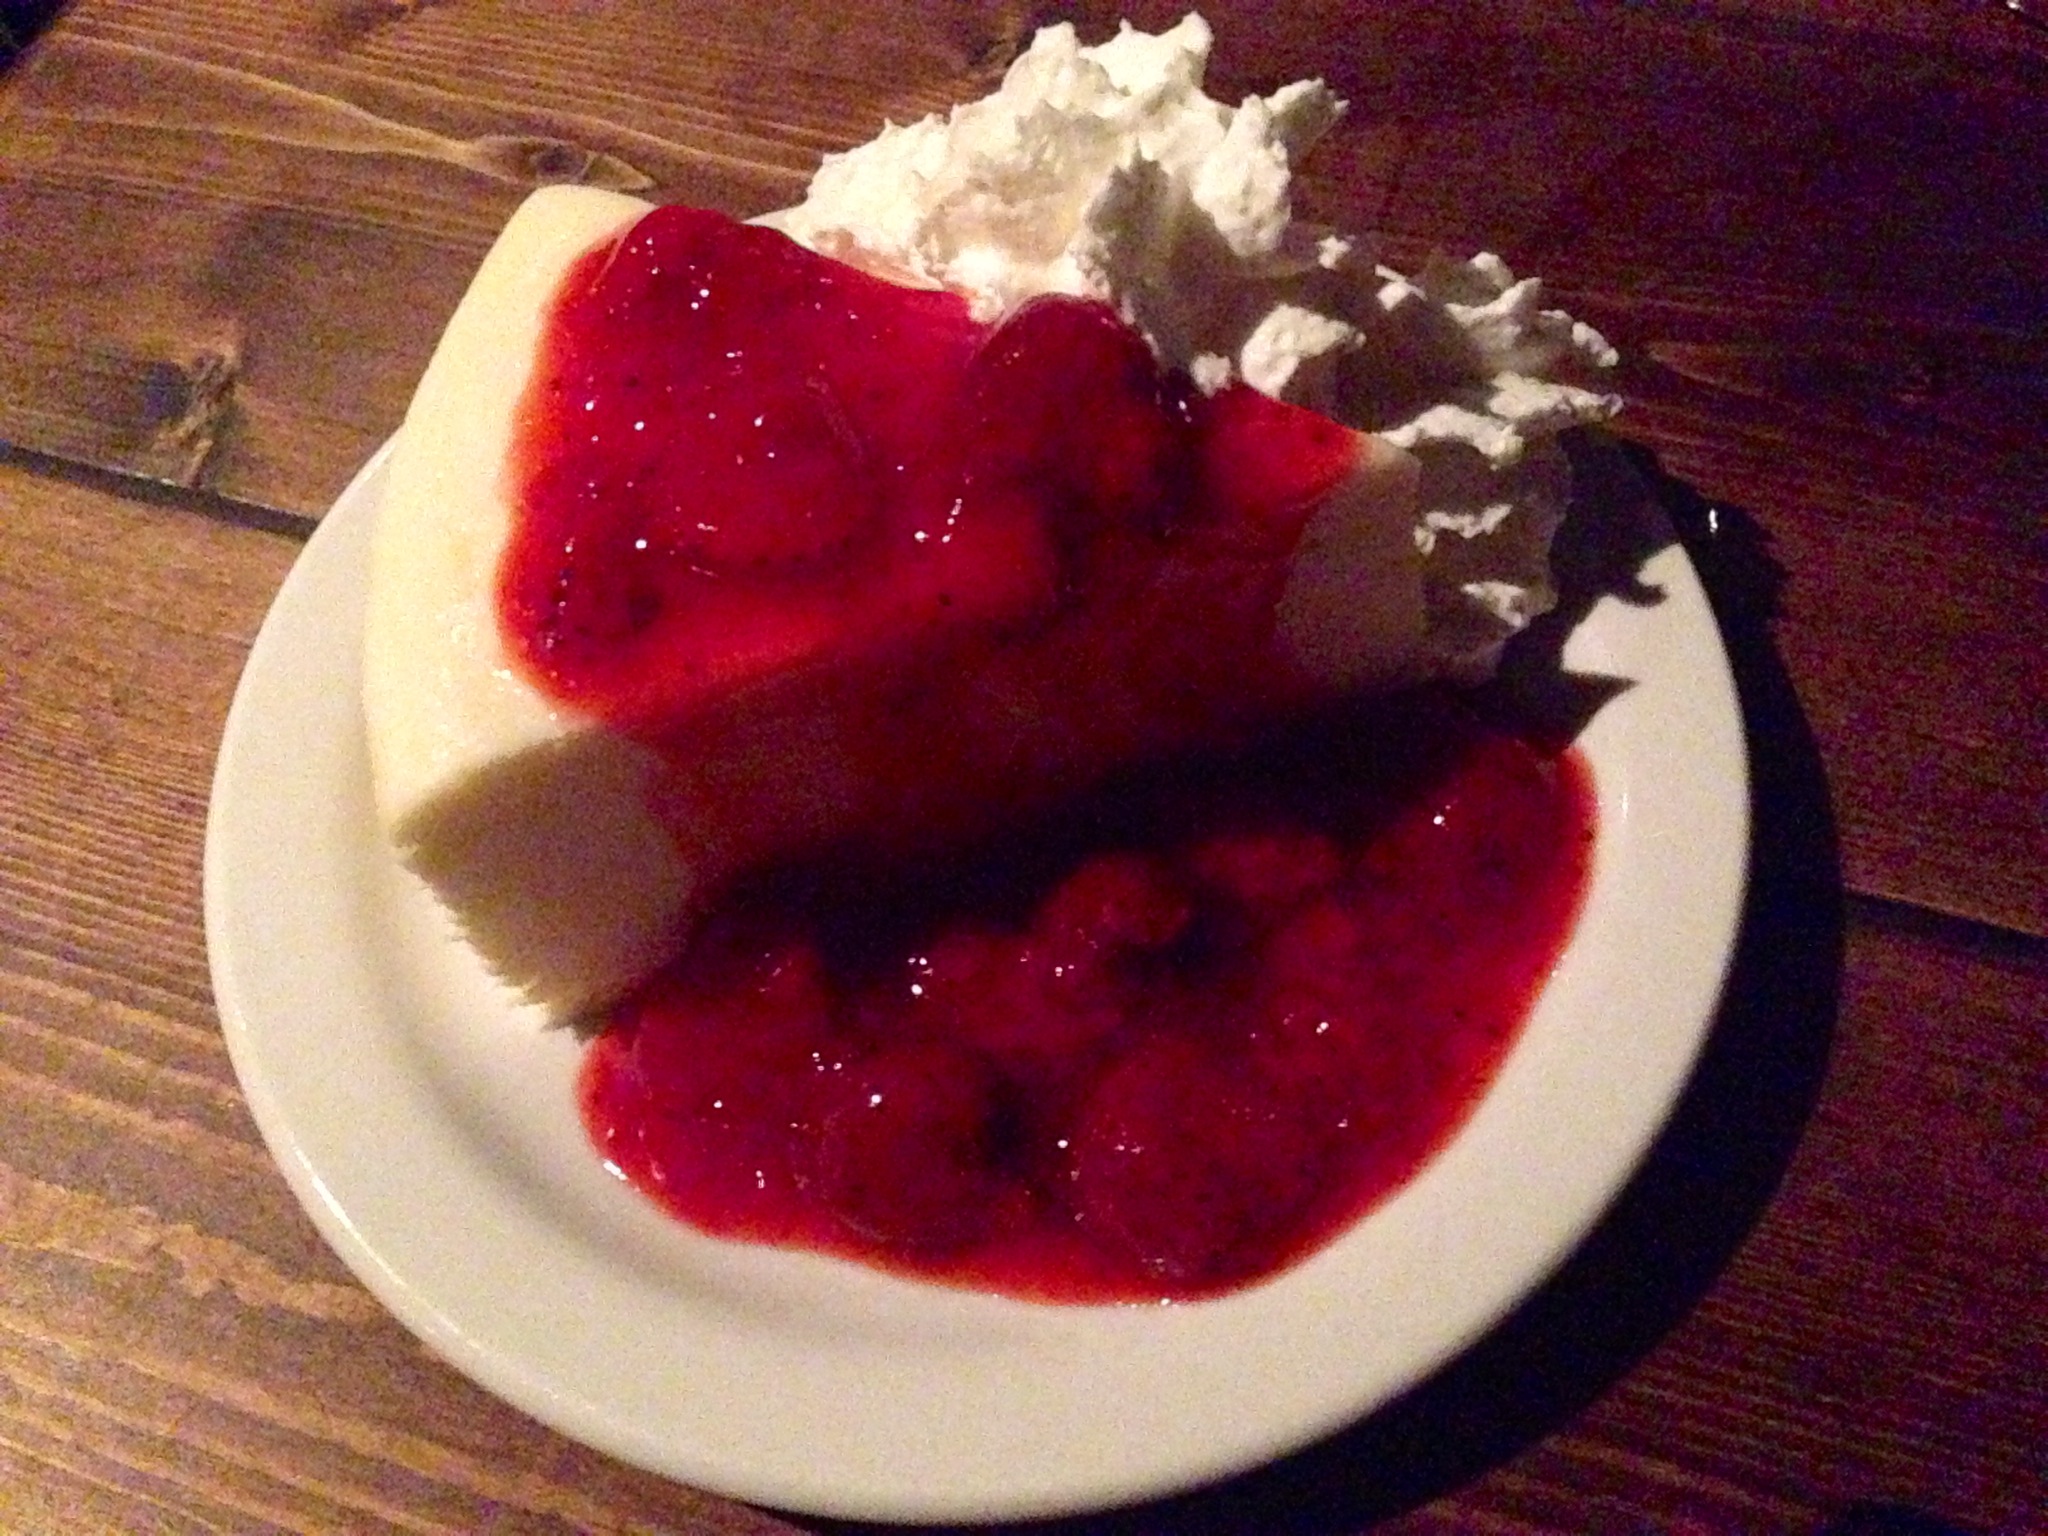 Original Cheesecake with Strawberries